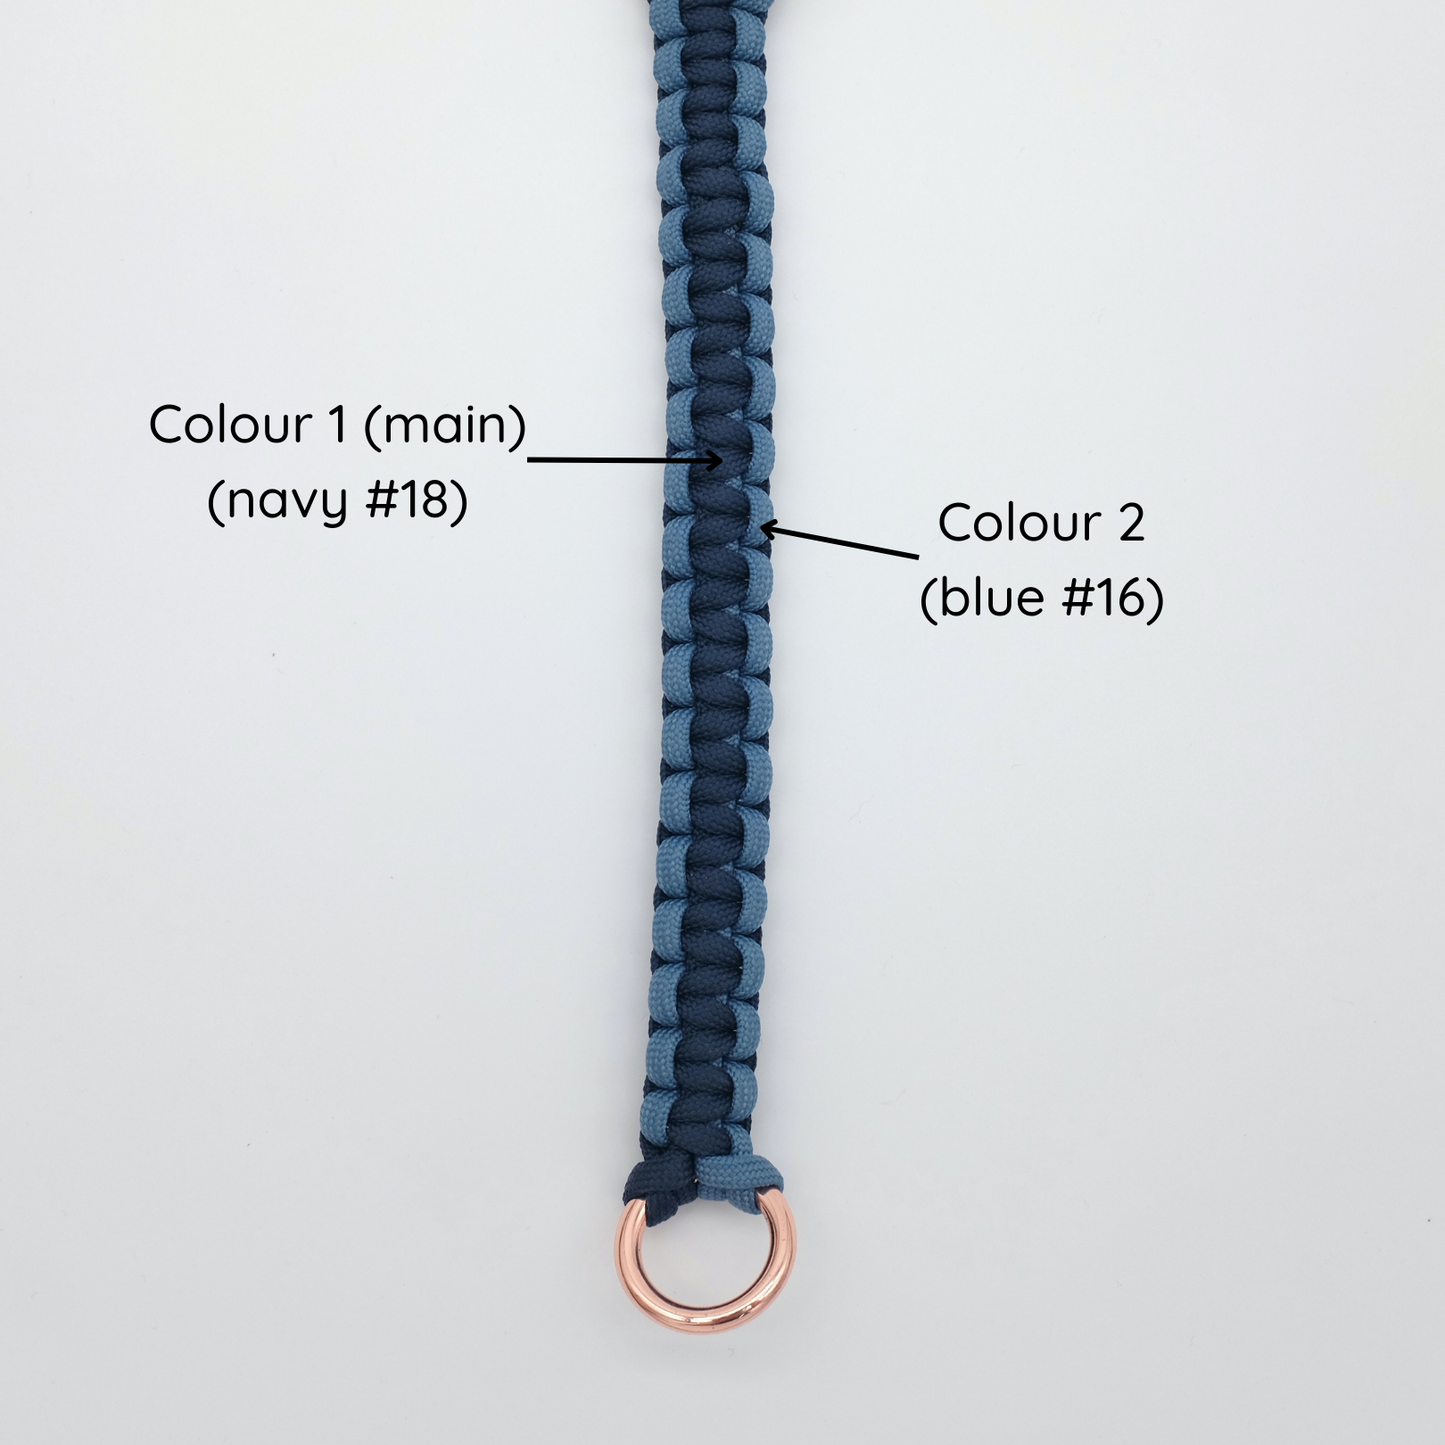 Escape-Proof Harness // roman three-straps harness